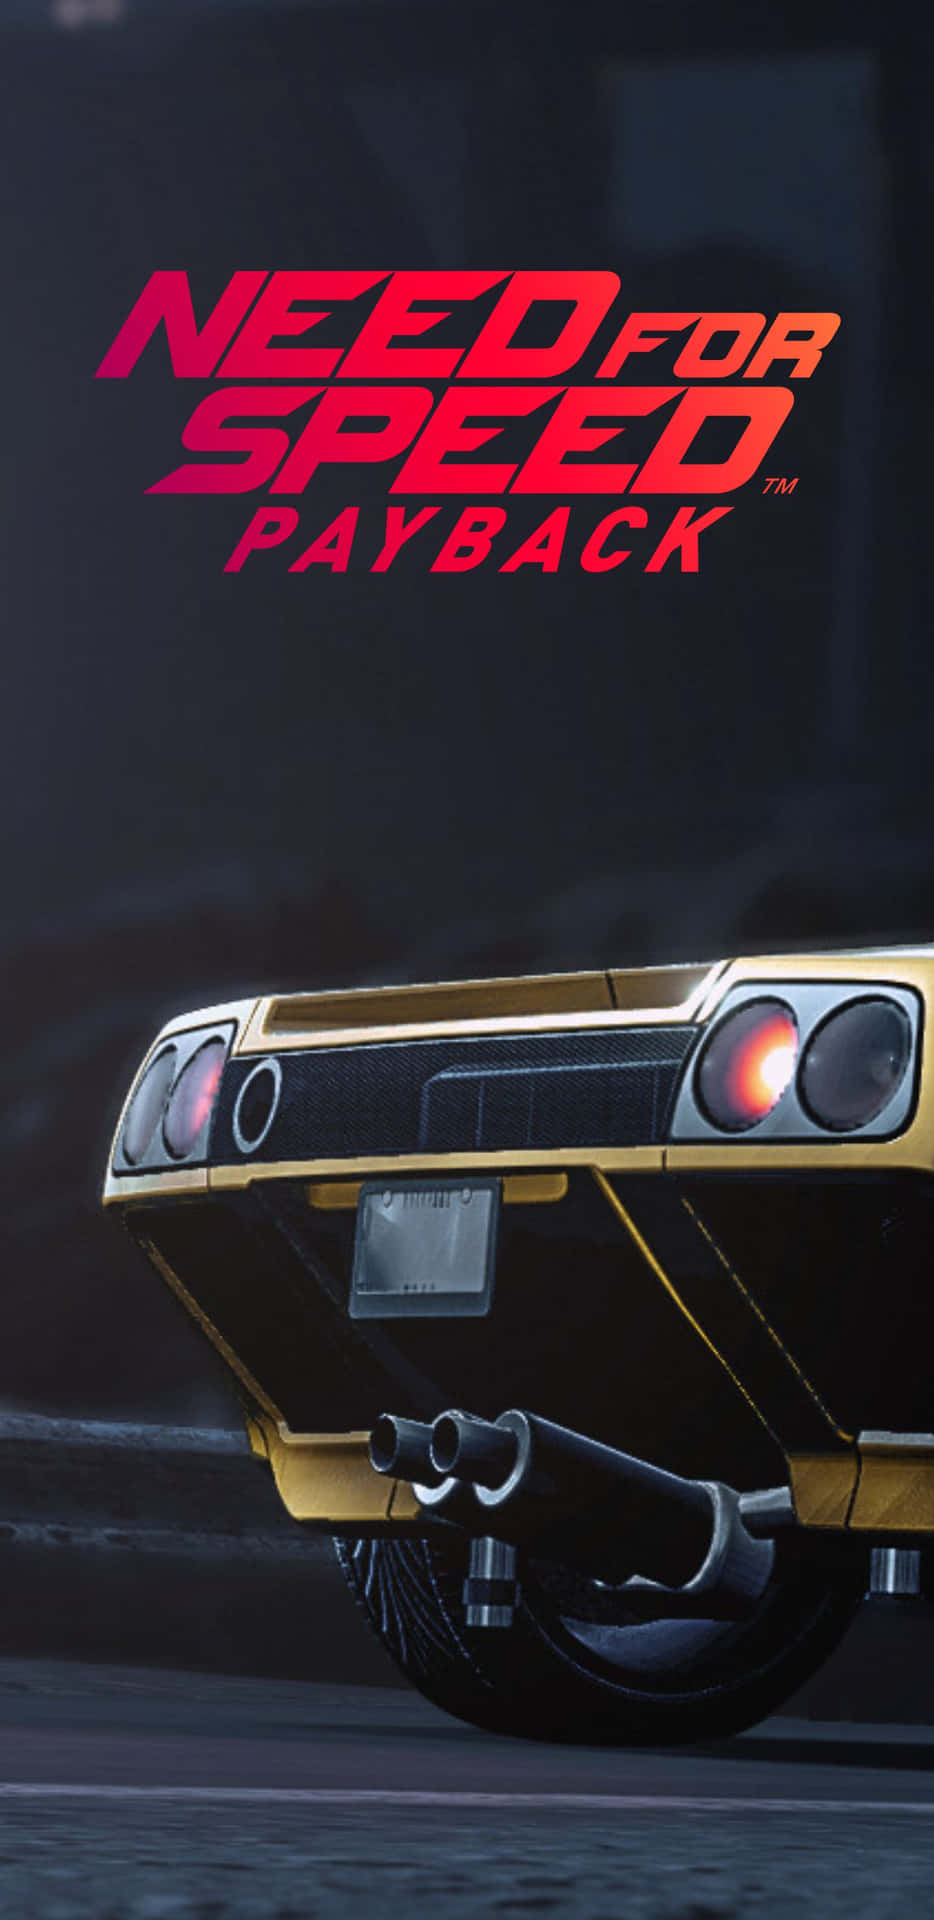 Sbloccanuove Possibilità In Need For Speed Payback